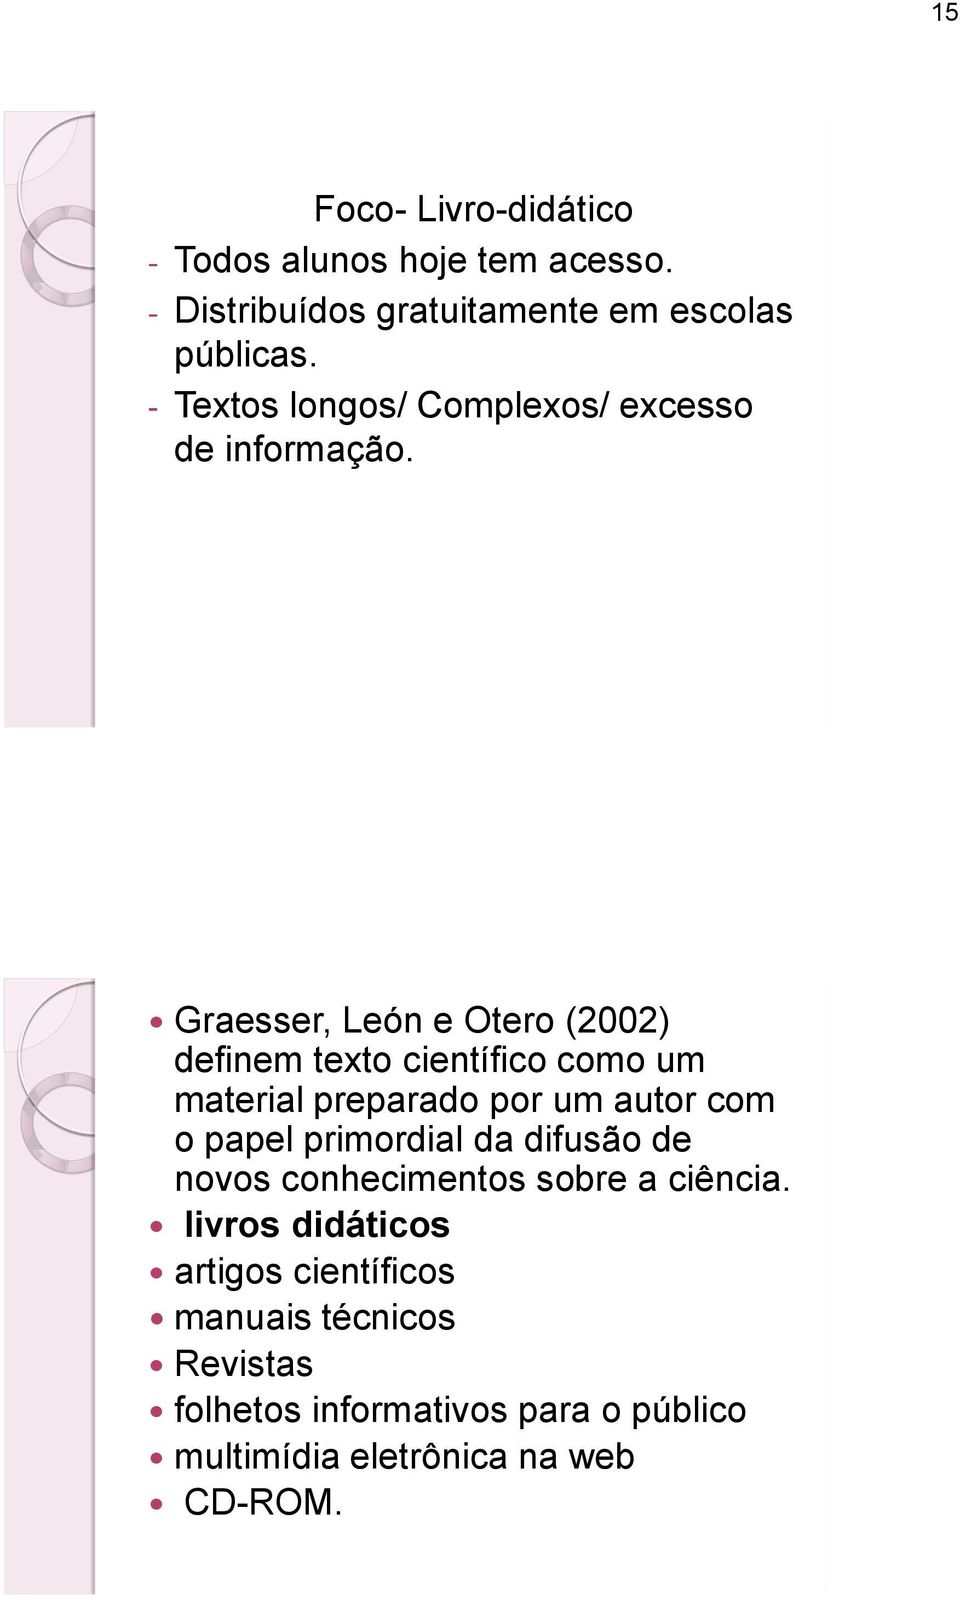 Graesser, León e Otero (2002) definem texto científico como um material preparado por um autor com o papel